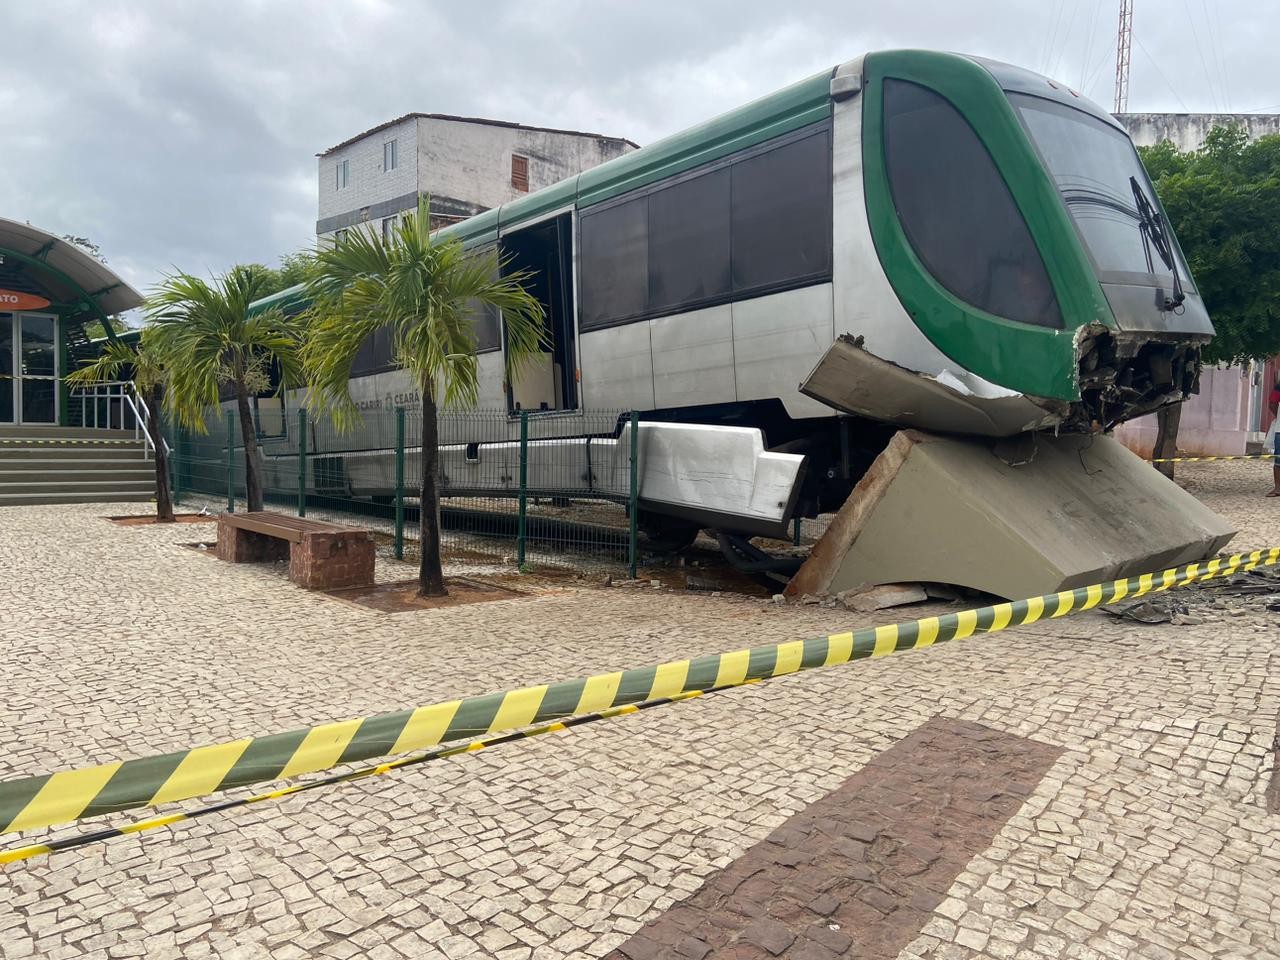 VLT fica sem controle, colide contra barreira de segurança e fere quatro passageiros no Ceará